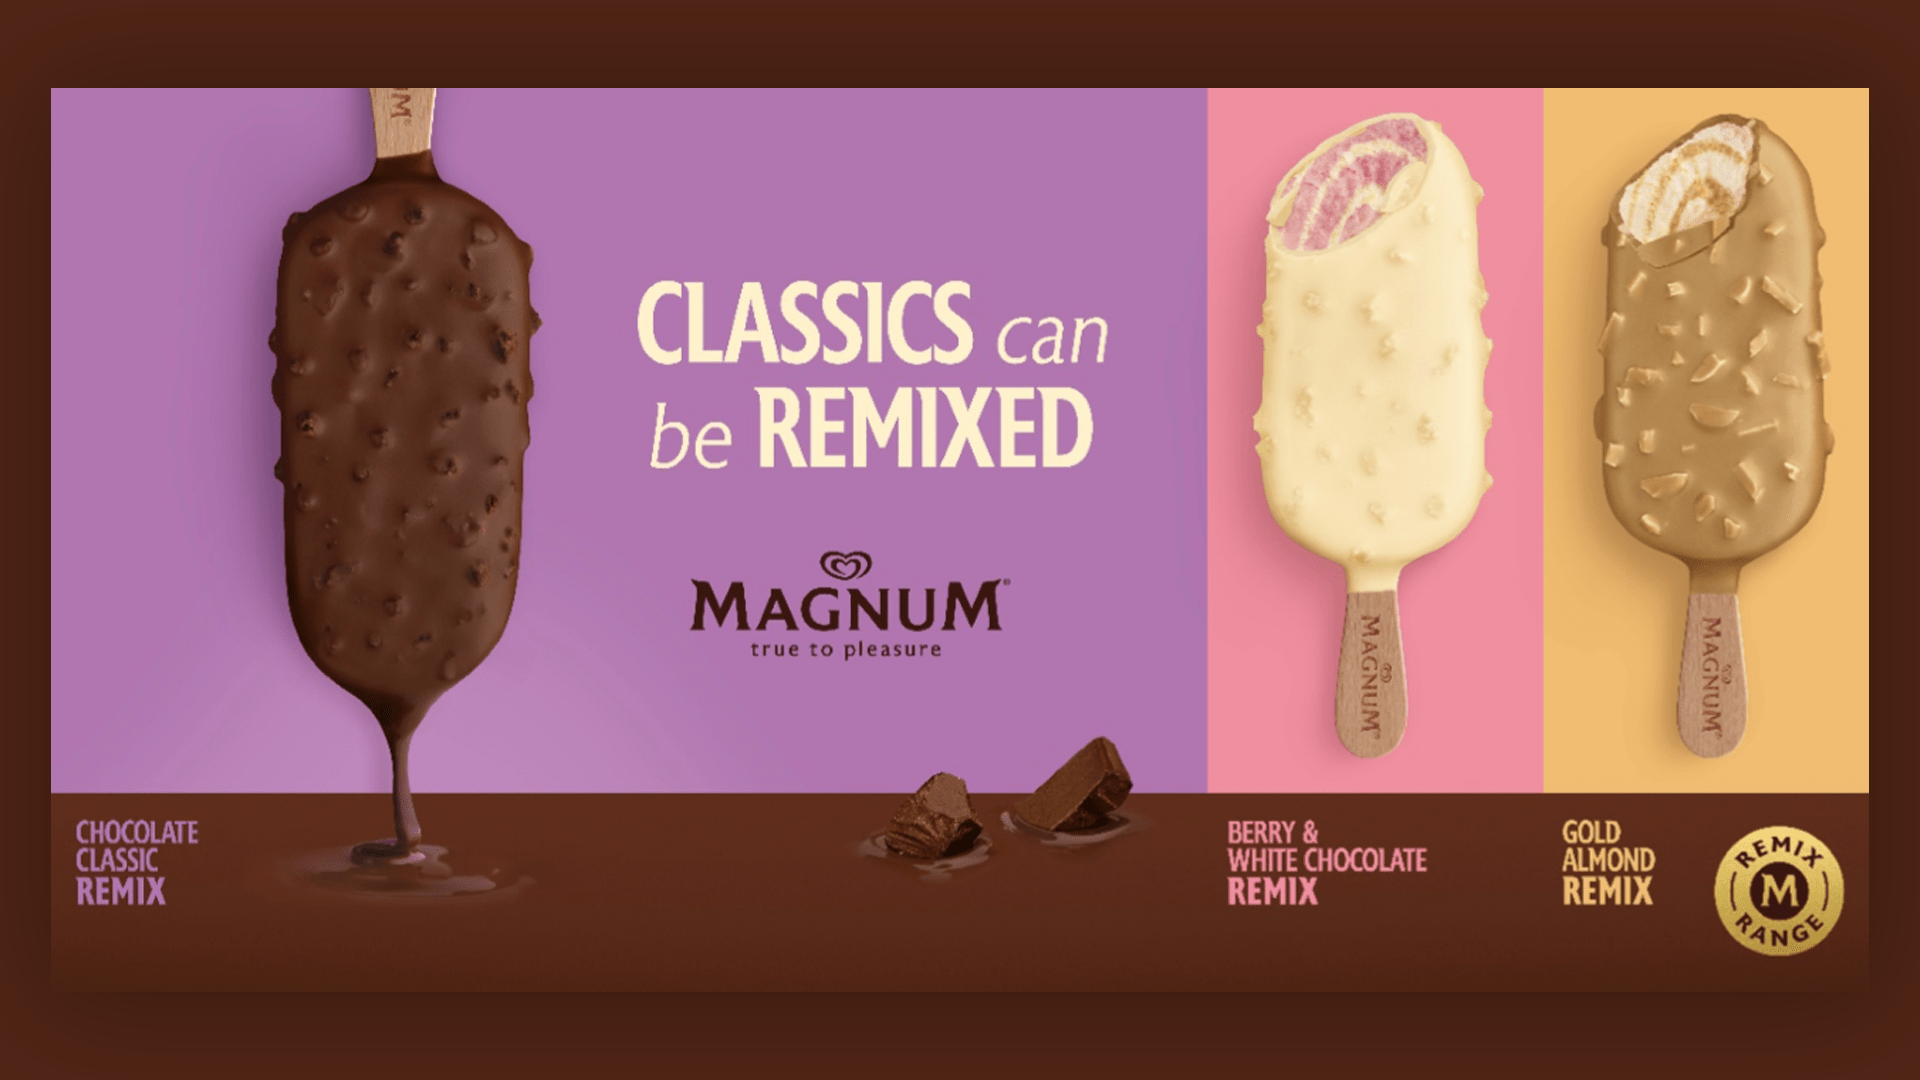 magnum chocolate classic remix